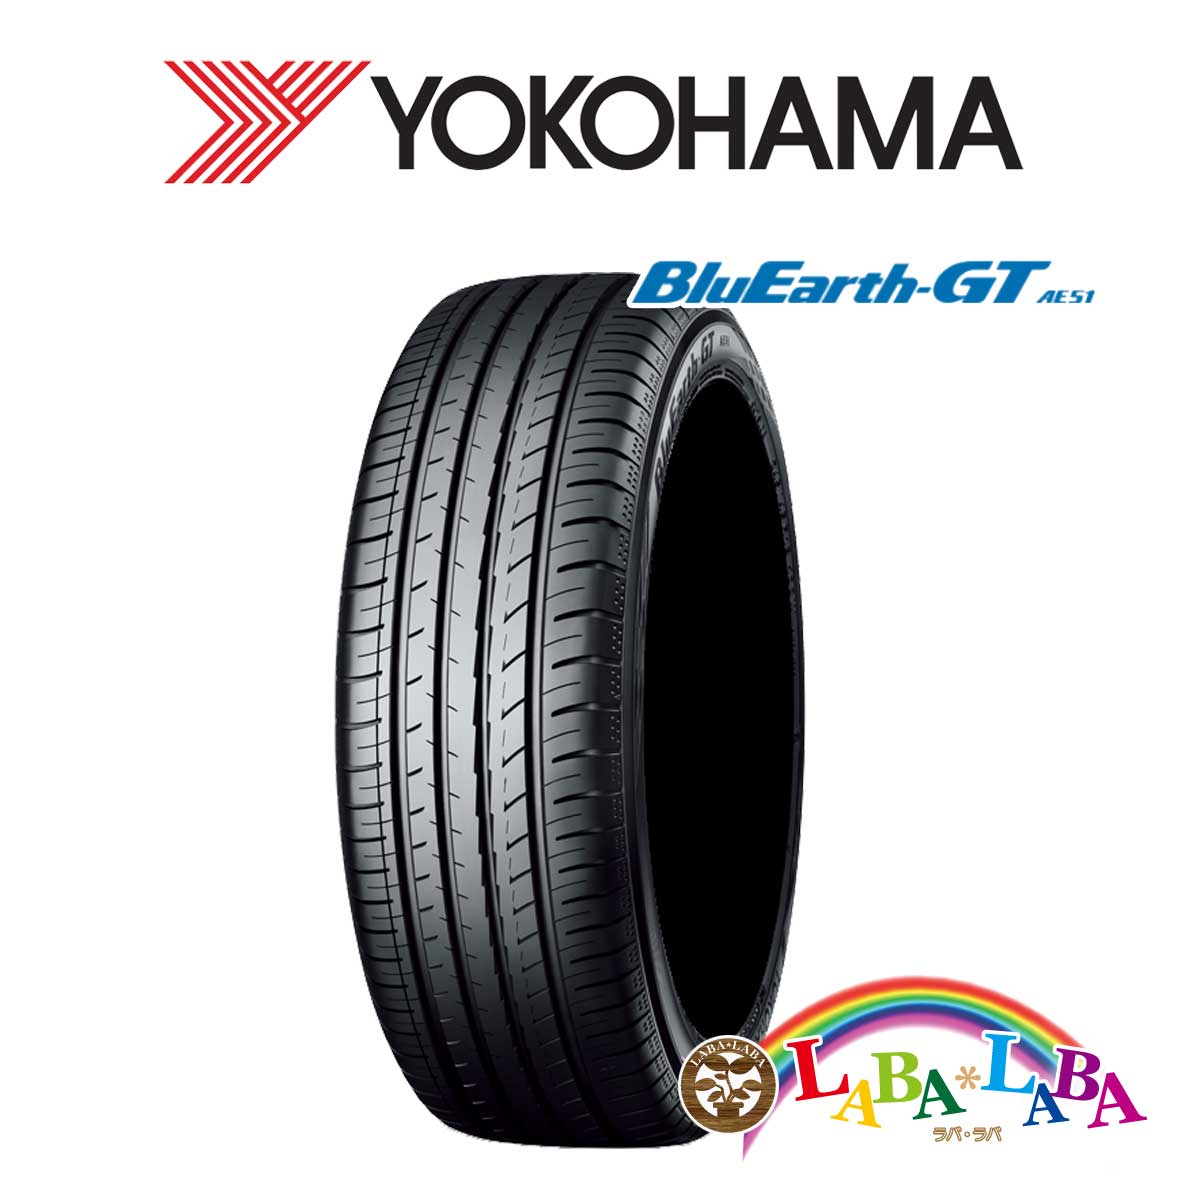 送料無料 国産タイヤ サマータイヤ 新品 タイヤのみ 4本SET YOKOHAMA ヨコハマ 75V 55R15 BluEarth-GT AE51 165 35％OFF ブルーアース 完全送料無料 4本セット